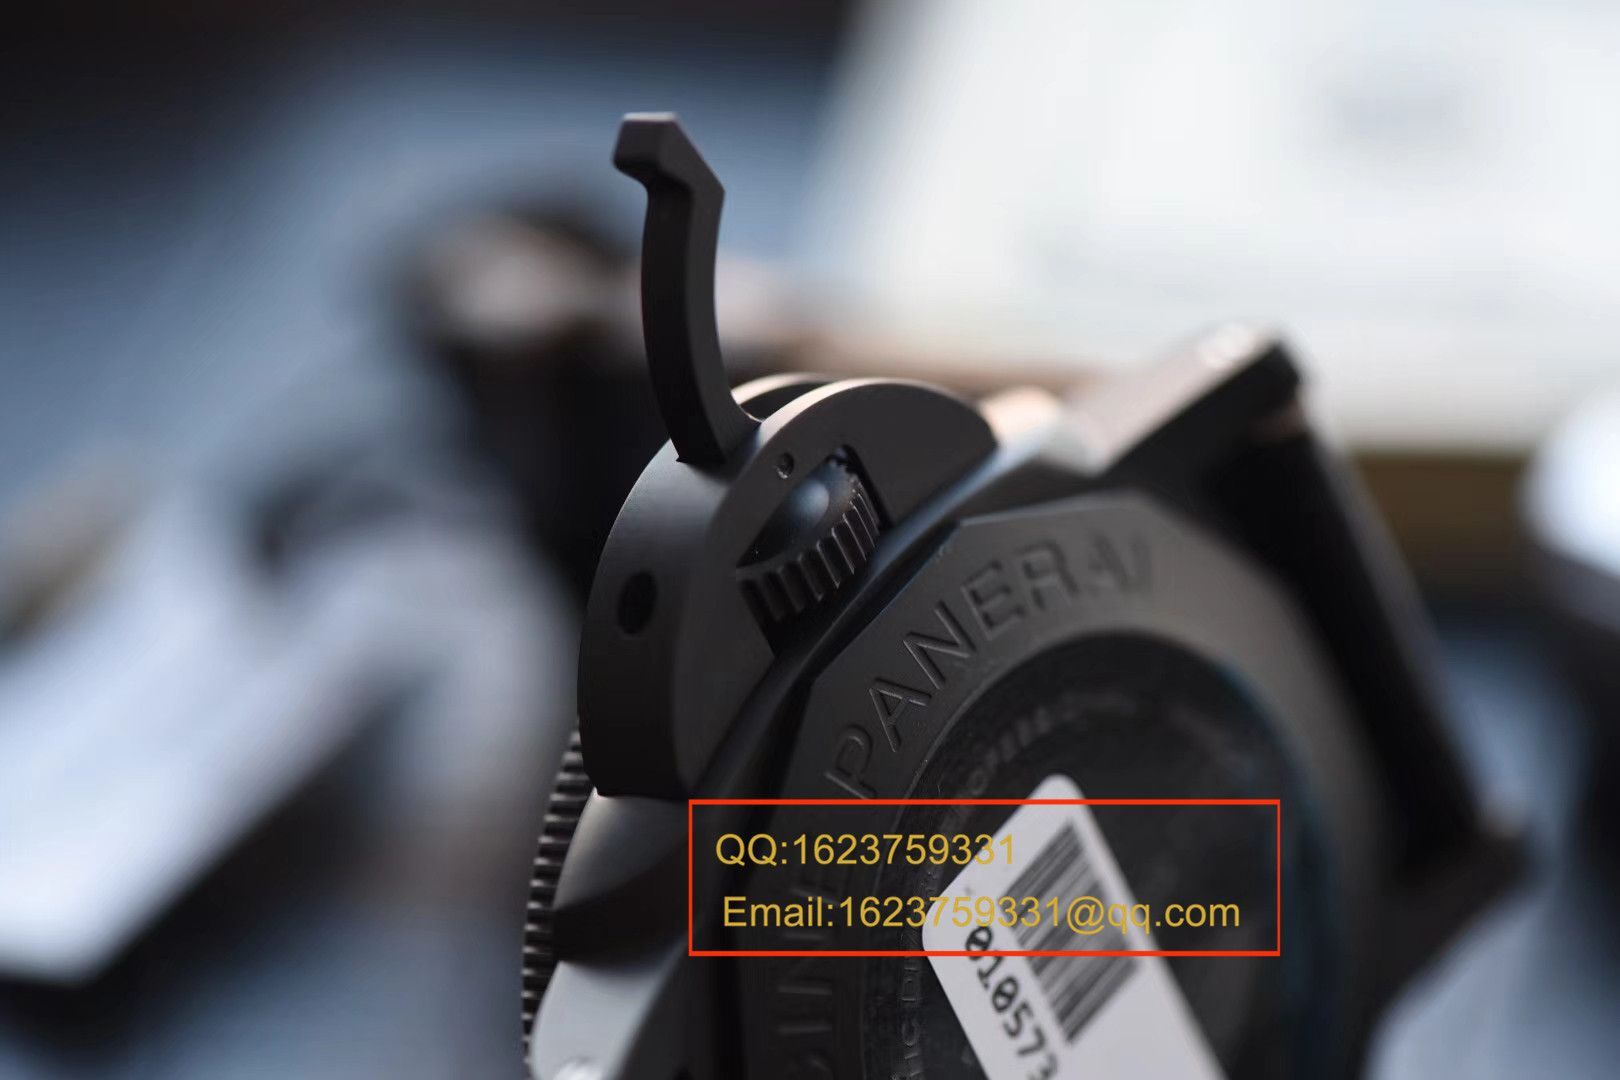 视频评测沛纳海特别版腕表系列PAM 00508腕表【VS一比一顶级复刻手表】VS 508 V2 升级版 / VSPAM00508MM